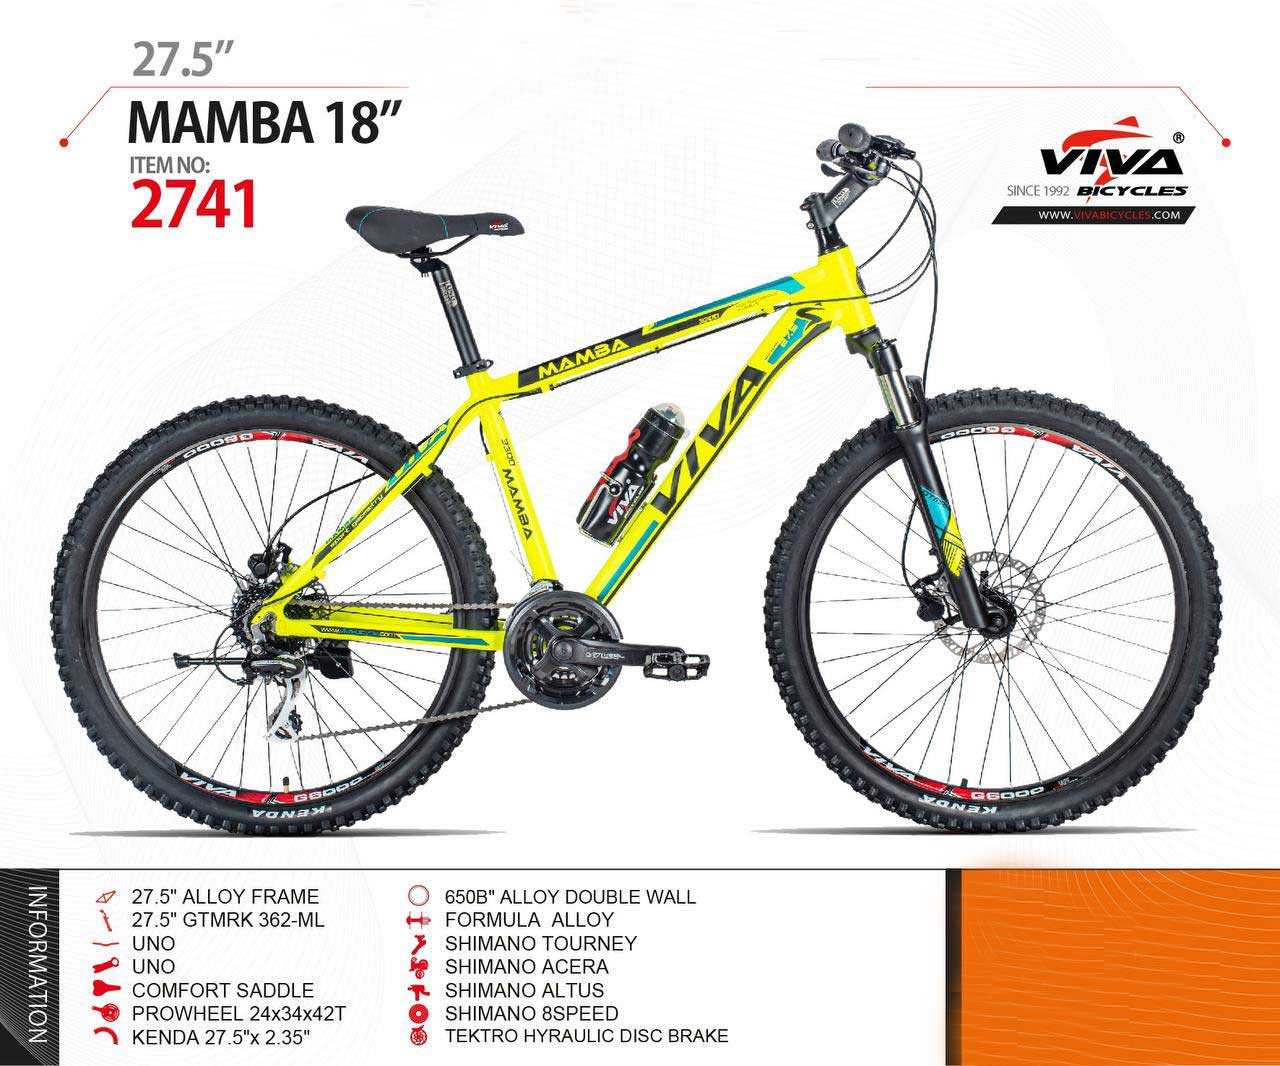 خرید دوچرخه ویوا مدل مامبا MAMBA سایز 27.5